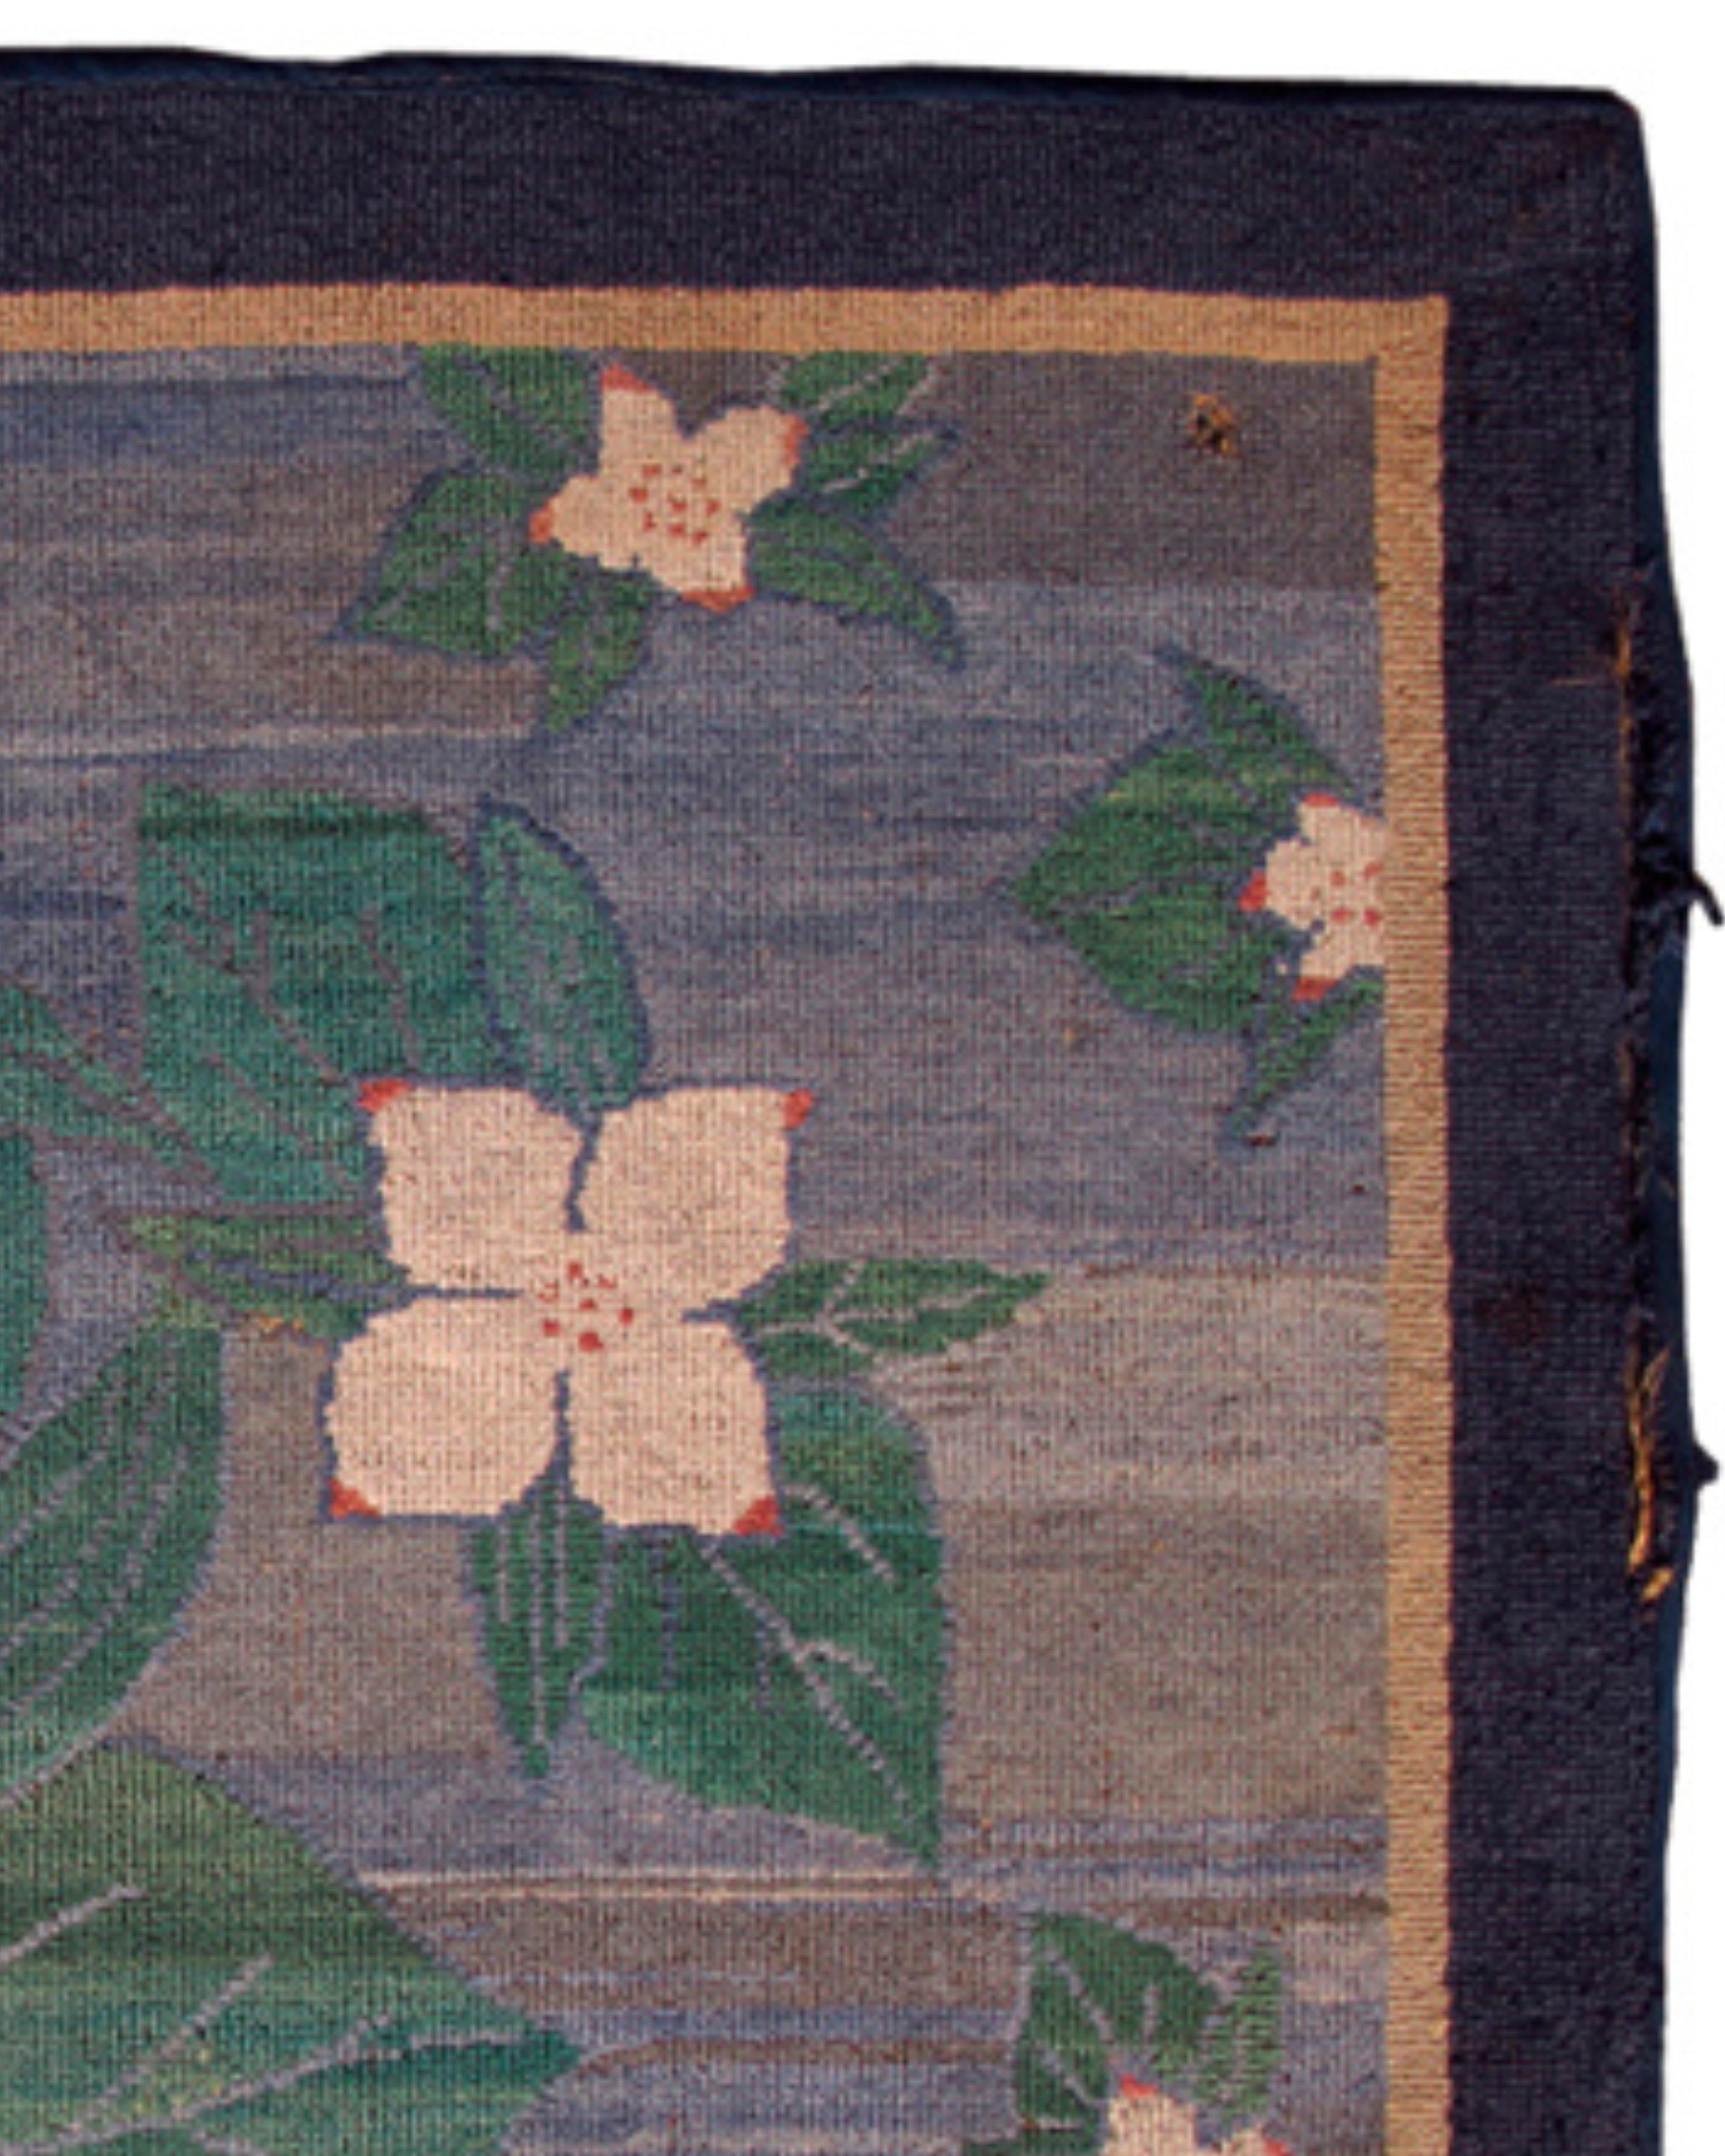 Grenfell-Teppich mit Kapuze, frühes 20. Jahrhundert

Grenfell-Hakenmatten und -Teppiche sind Industrieprodukte der Grenfell Mission, die von Dr. Wilfred T. Grenfell (1865-1940) gegründet wurde. Die Wurzeln des Mattenhakens lassen sich bis zu den